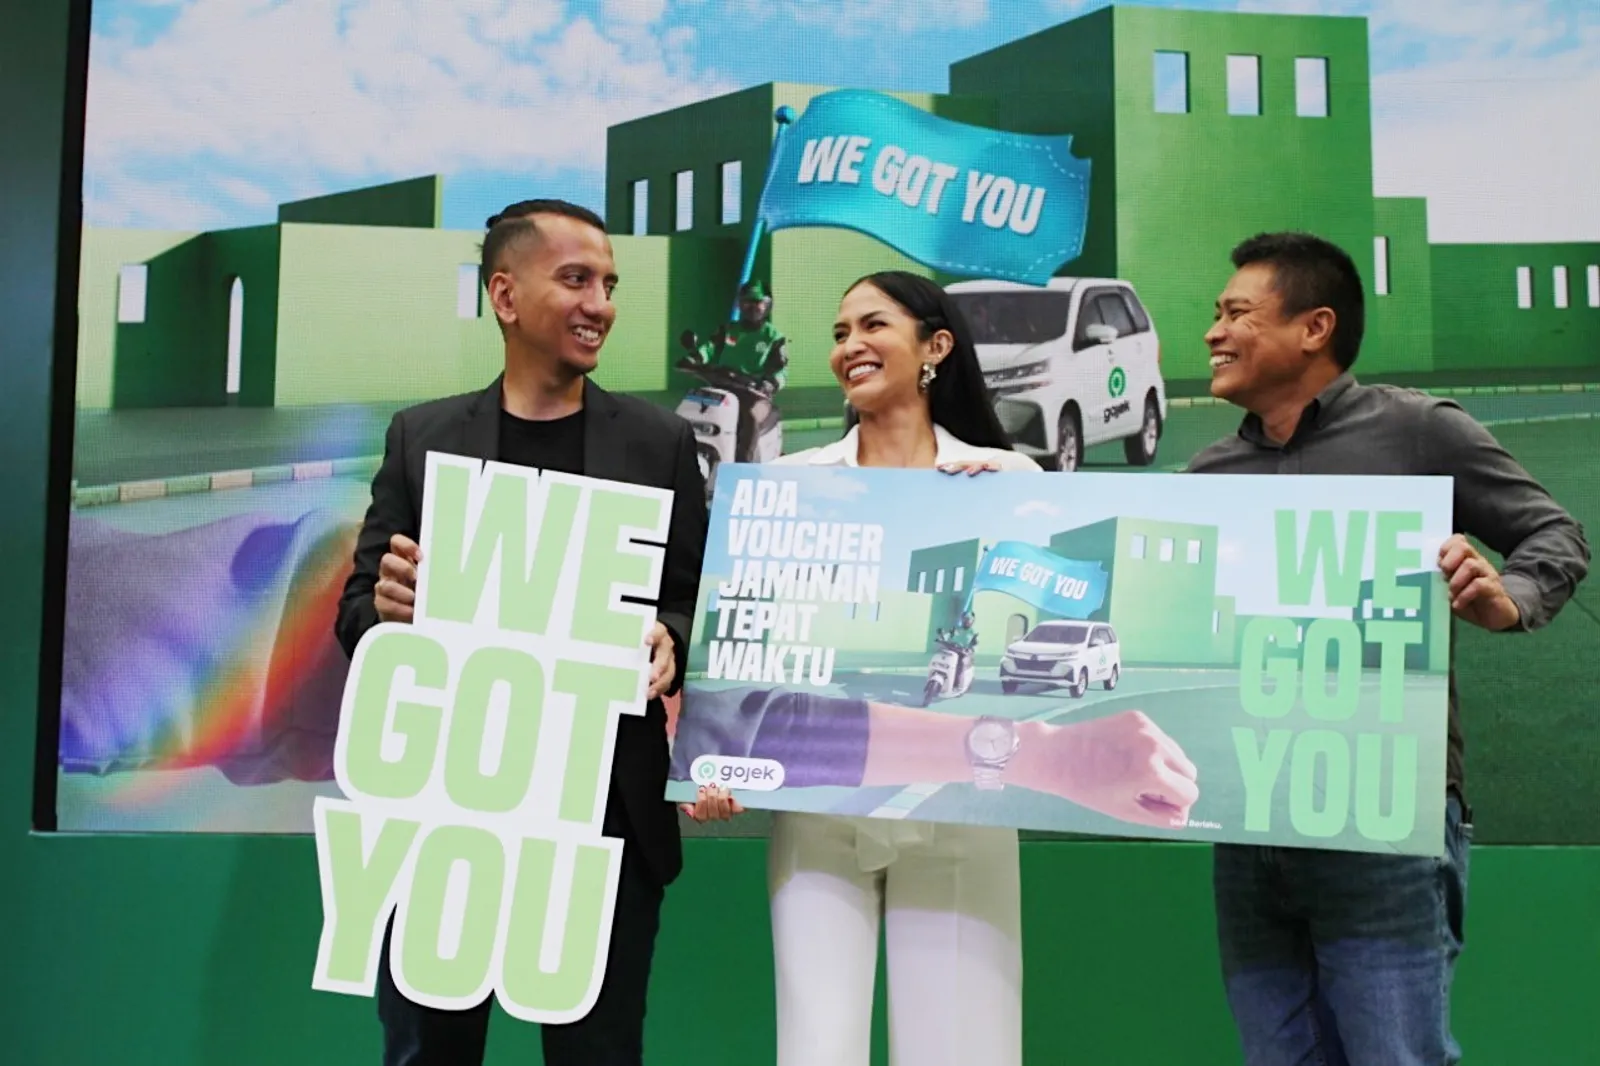 Hadirkan Pelayanan Terbaik, Gojek Luncurkan Kampanye #WeGotYou